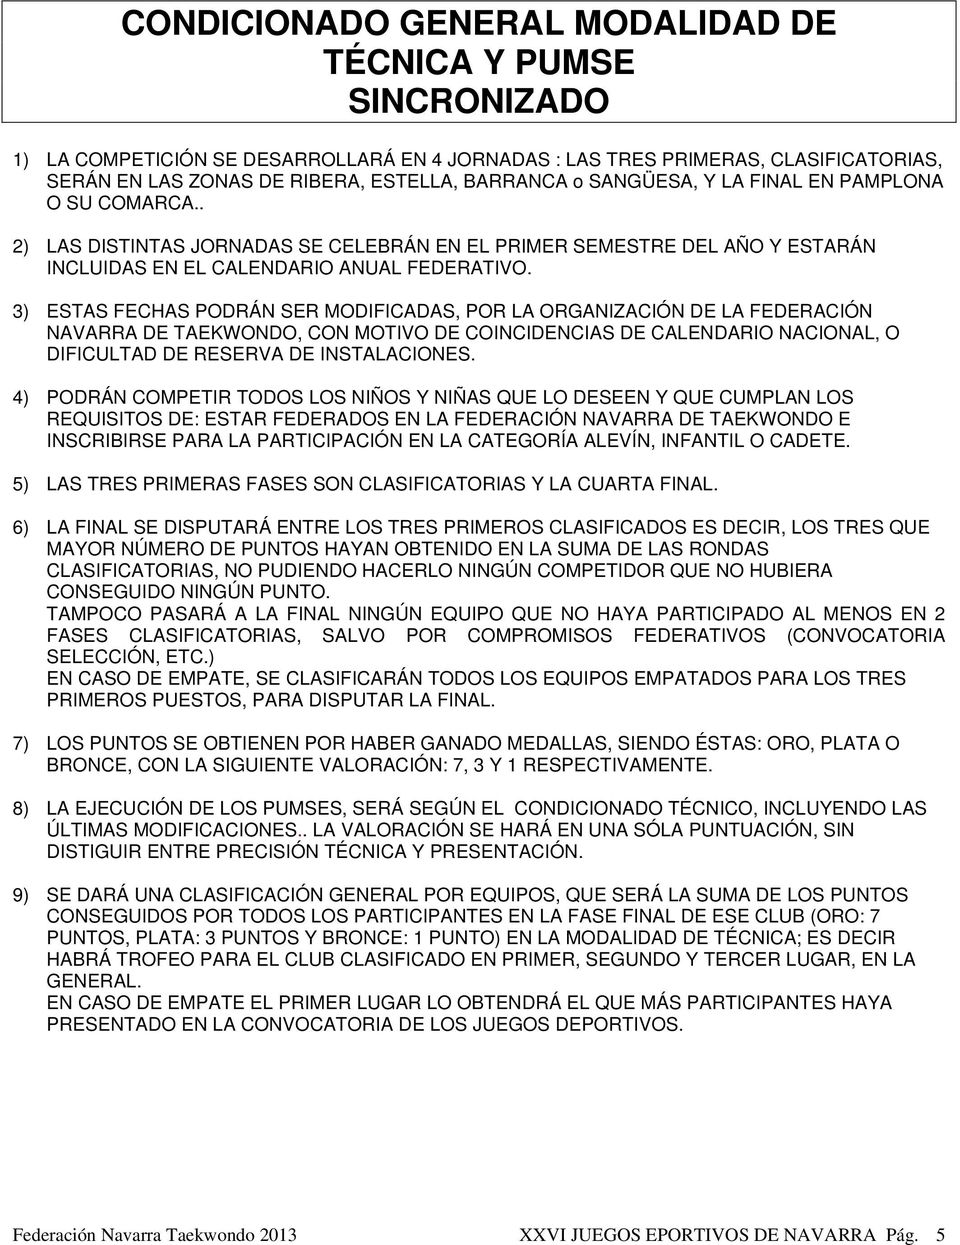 3) ESTAS FECHAS PODRÁN SER MODIFICADAS, POR LA ORGANIZACIÓN DE LA FEDERACIÓN NAVARRA DE TAEKWONDO, CON MOTIVO DE COINCIDENCIAS DE CALENDARIO NACIONAL, O DIFICULTAD DE RESERVA DE INSTALACIONES.